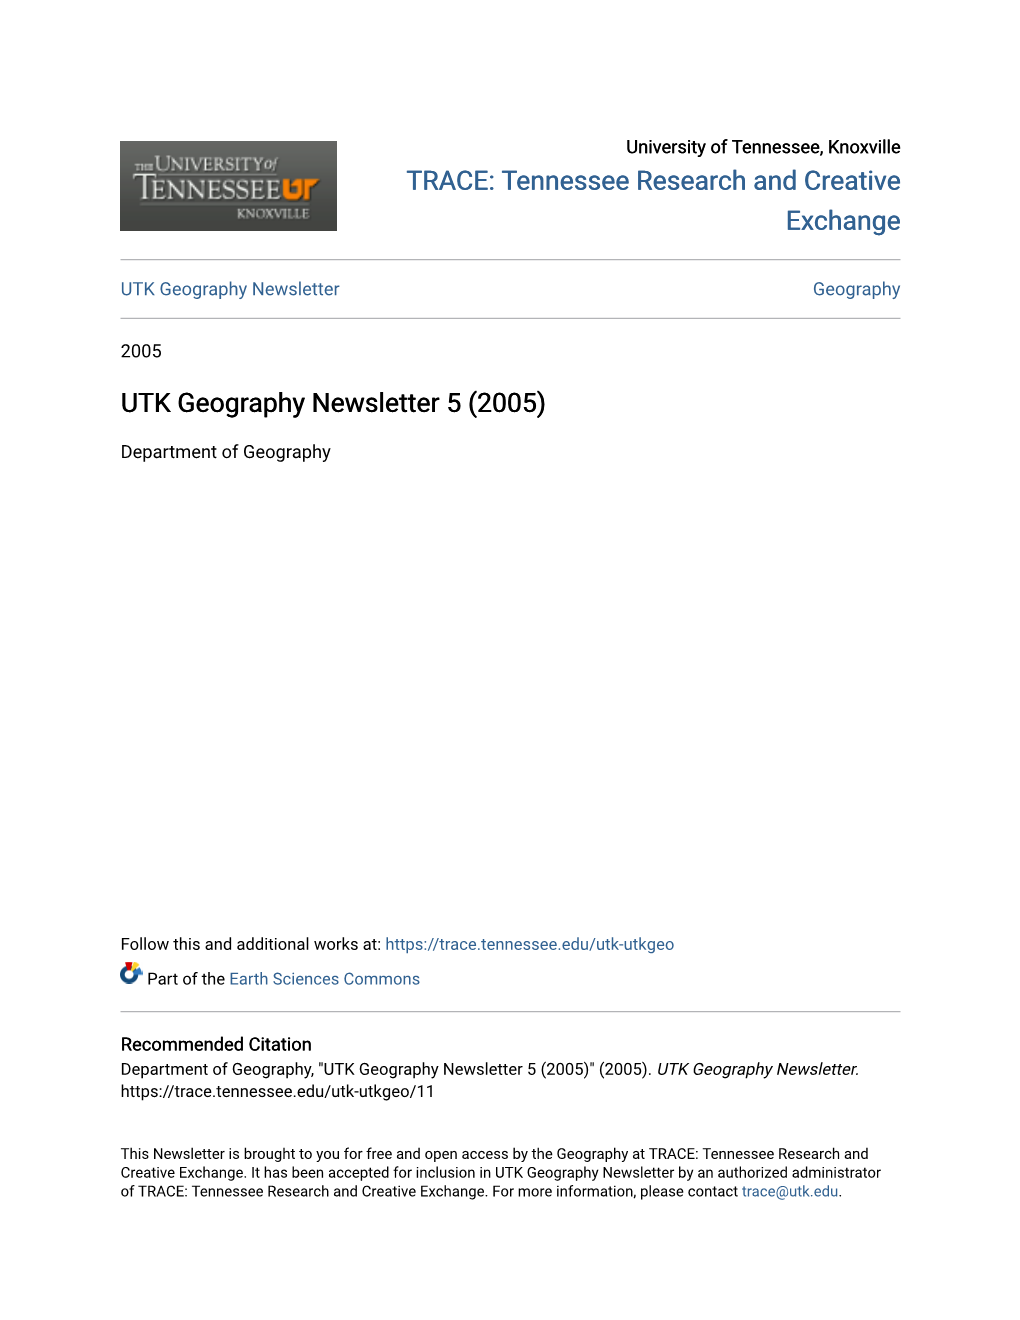 UTK Geography Newsletter 5 (2005)